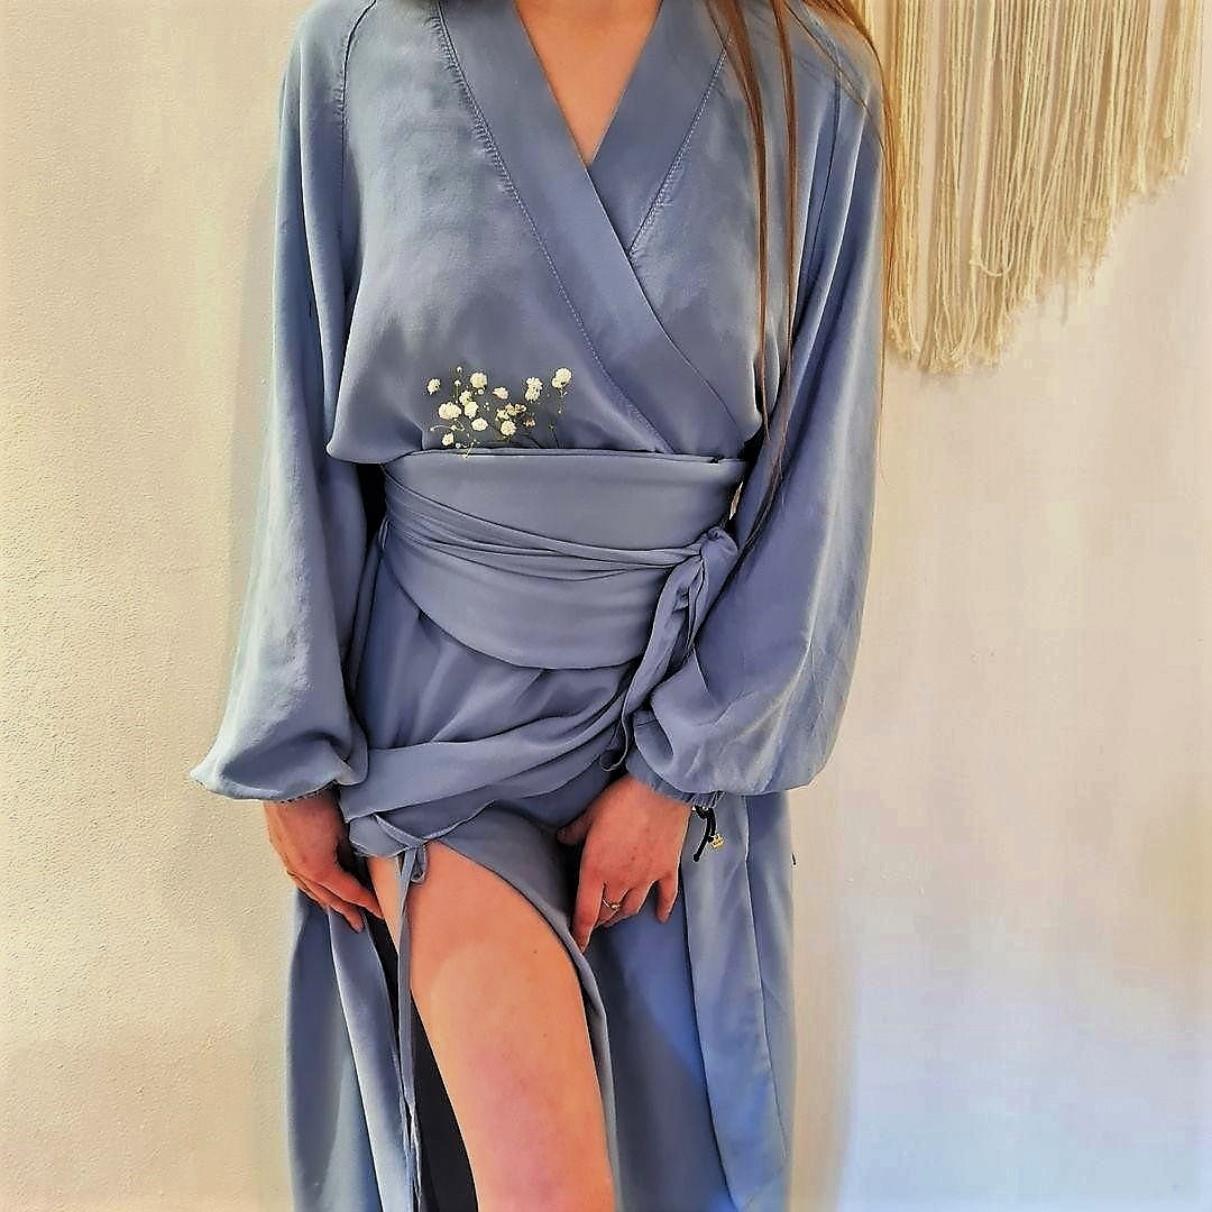 SOPO to sukienka regulowana inspirowana formą kimono. Uszyłam ją z 100% miękkiej wiskozy bardzo przyjemnej w dotyku. SOPO to bardzo sensualna rzecz. Do sukienki dołączam 2 paski: klasyczny oraz innowacyjny pasek-nerkę, który formą nawiązuje luźno do japońskiego obi, jest usztywniany i zapinany na dyskretny zamek. 